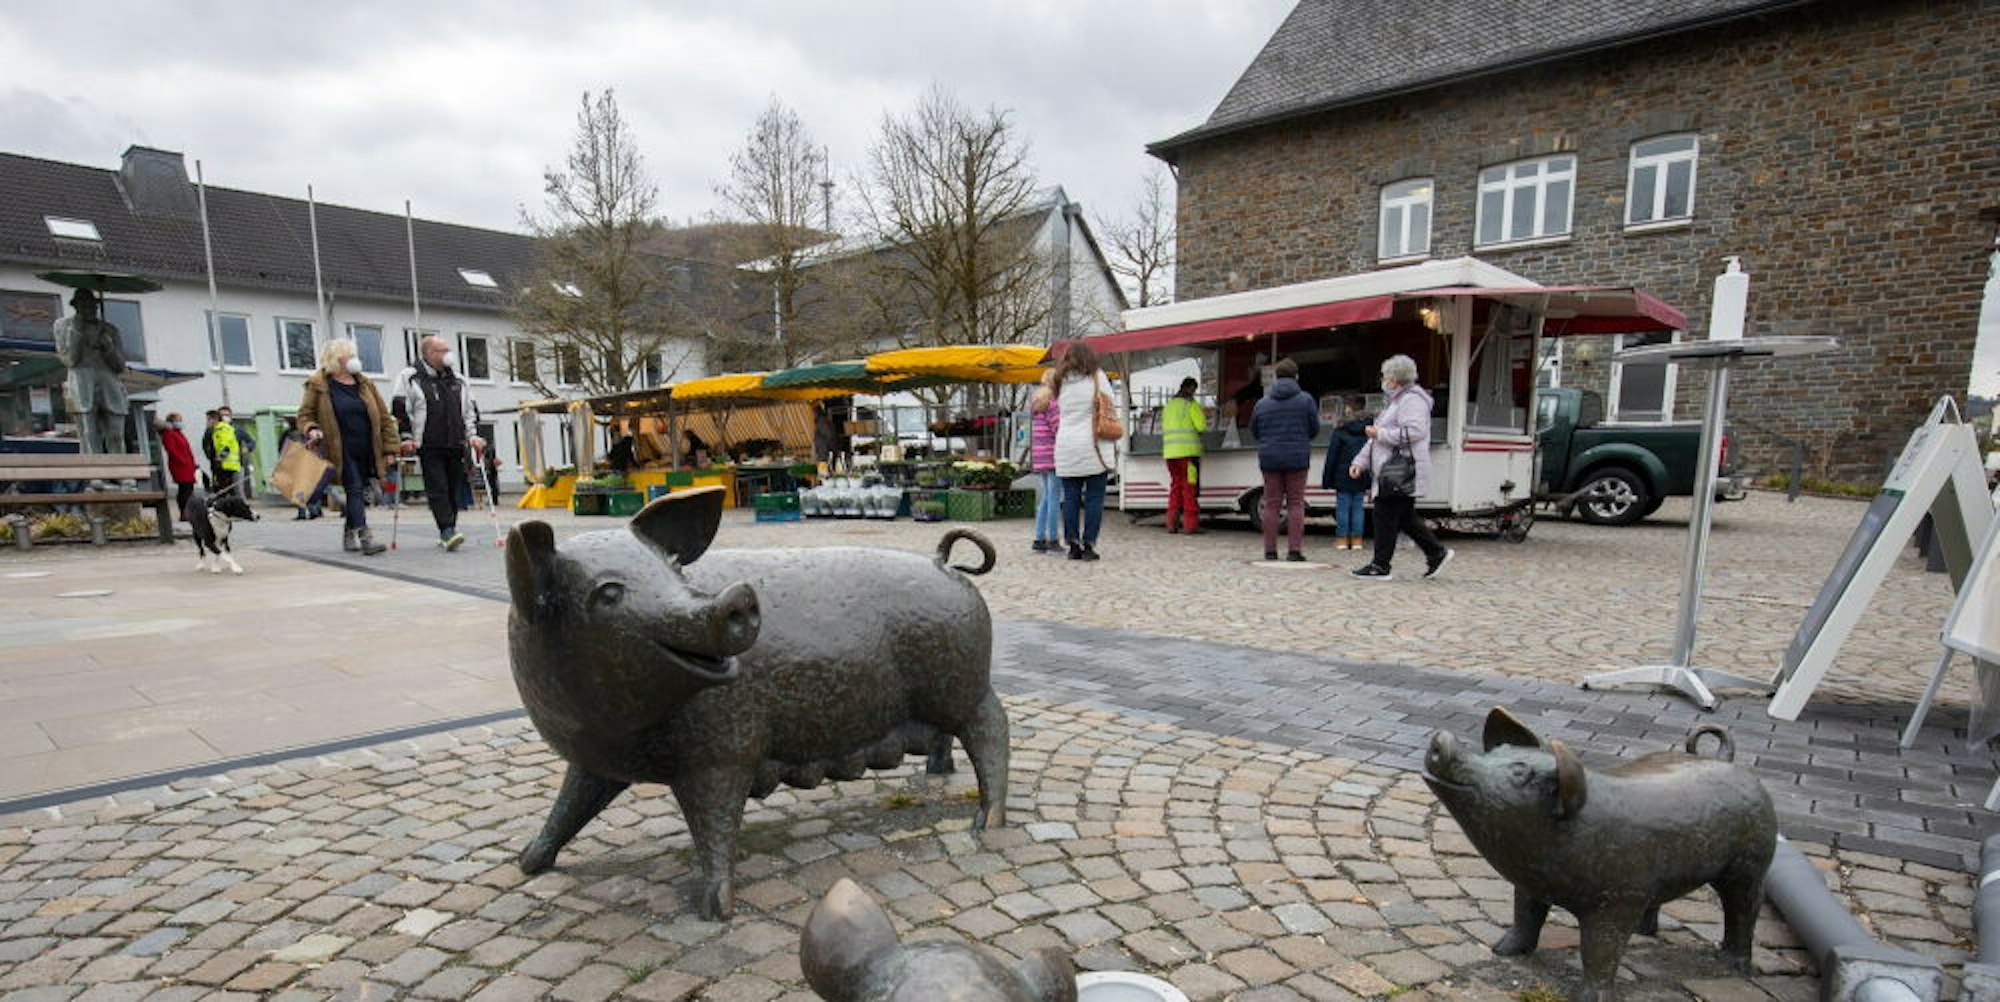 Auf dem Milly-la-Forêt-Platz am Morsbacher Rathaus hatte der Wochenmarkt im März einen gelungen Auftakt erlebt.